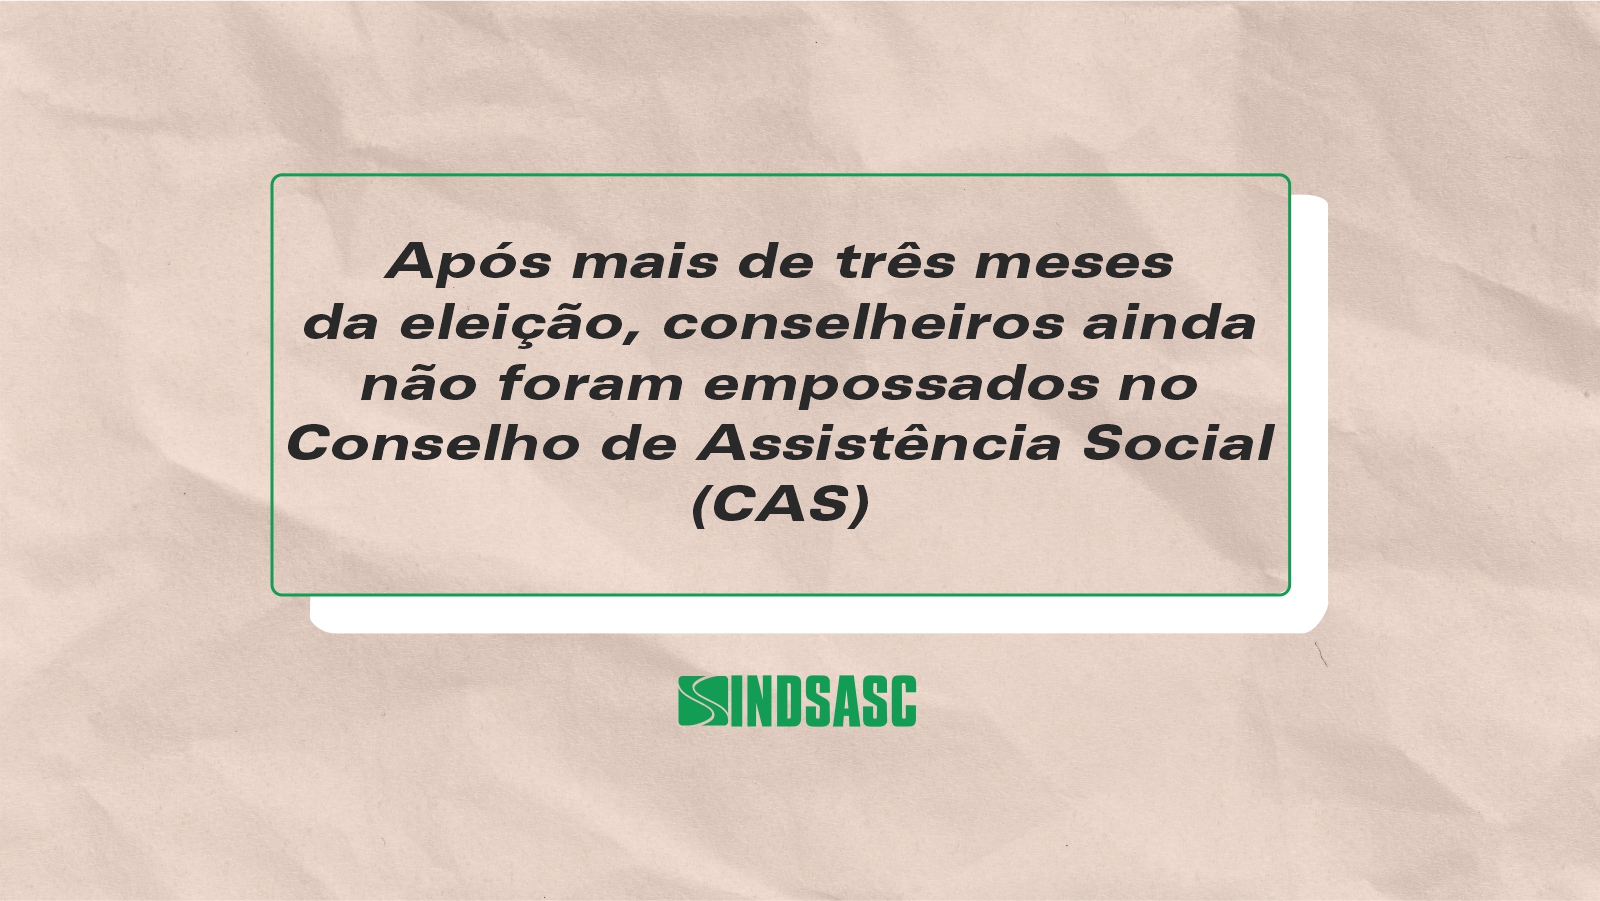 Após mais de três meses da eleição, conselheiros ainda não foram empossados no conselho de assistência social (CAS)